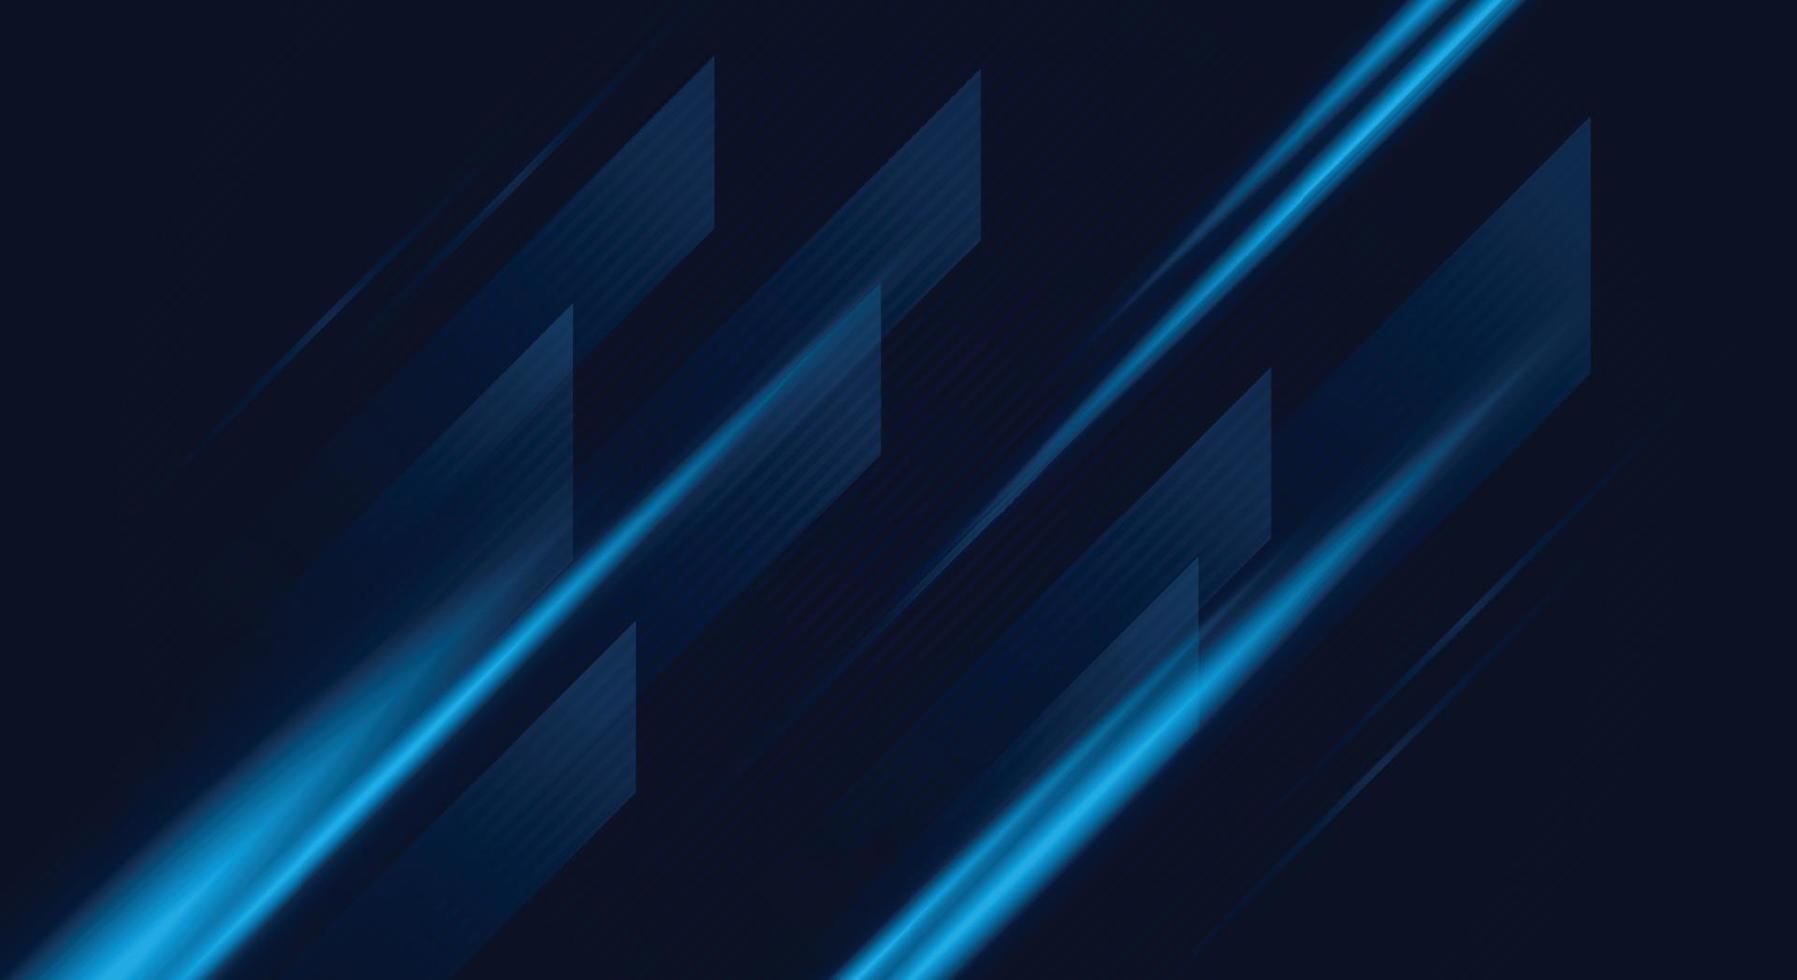 imagem digital de raios de luz, listras linhas com luz azul. vetor abstrato, ciência, futurista, conceito de tecnologia de energia.